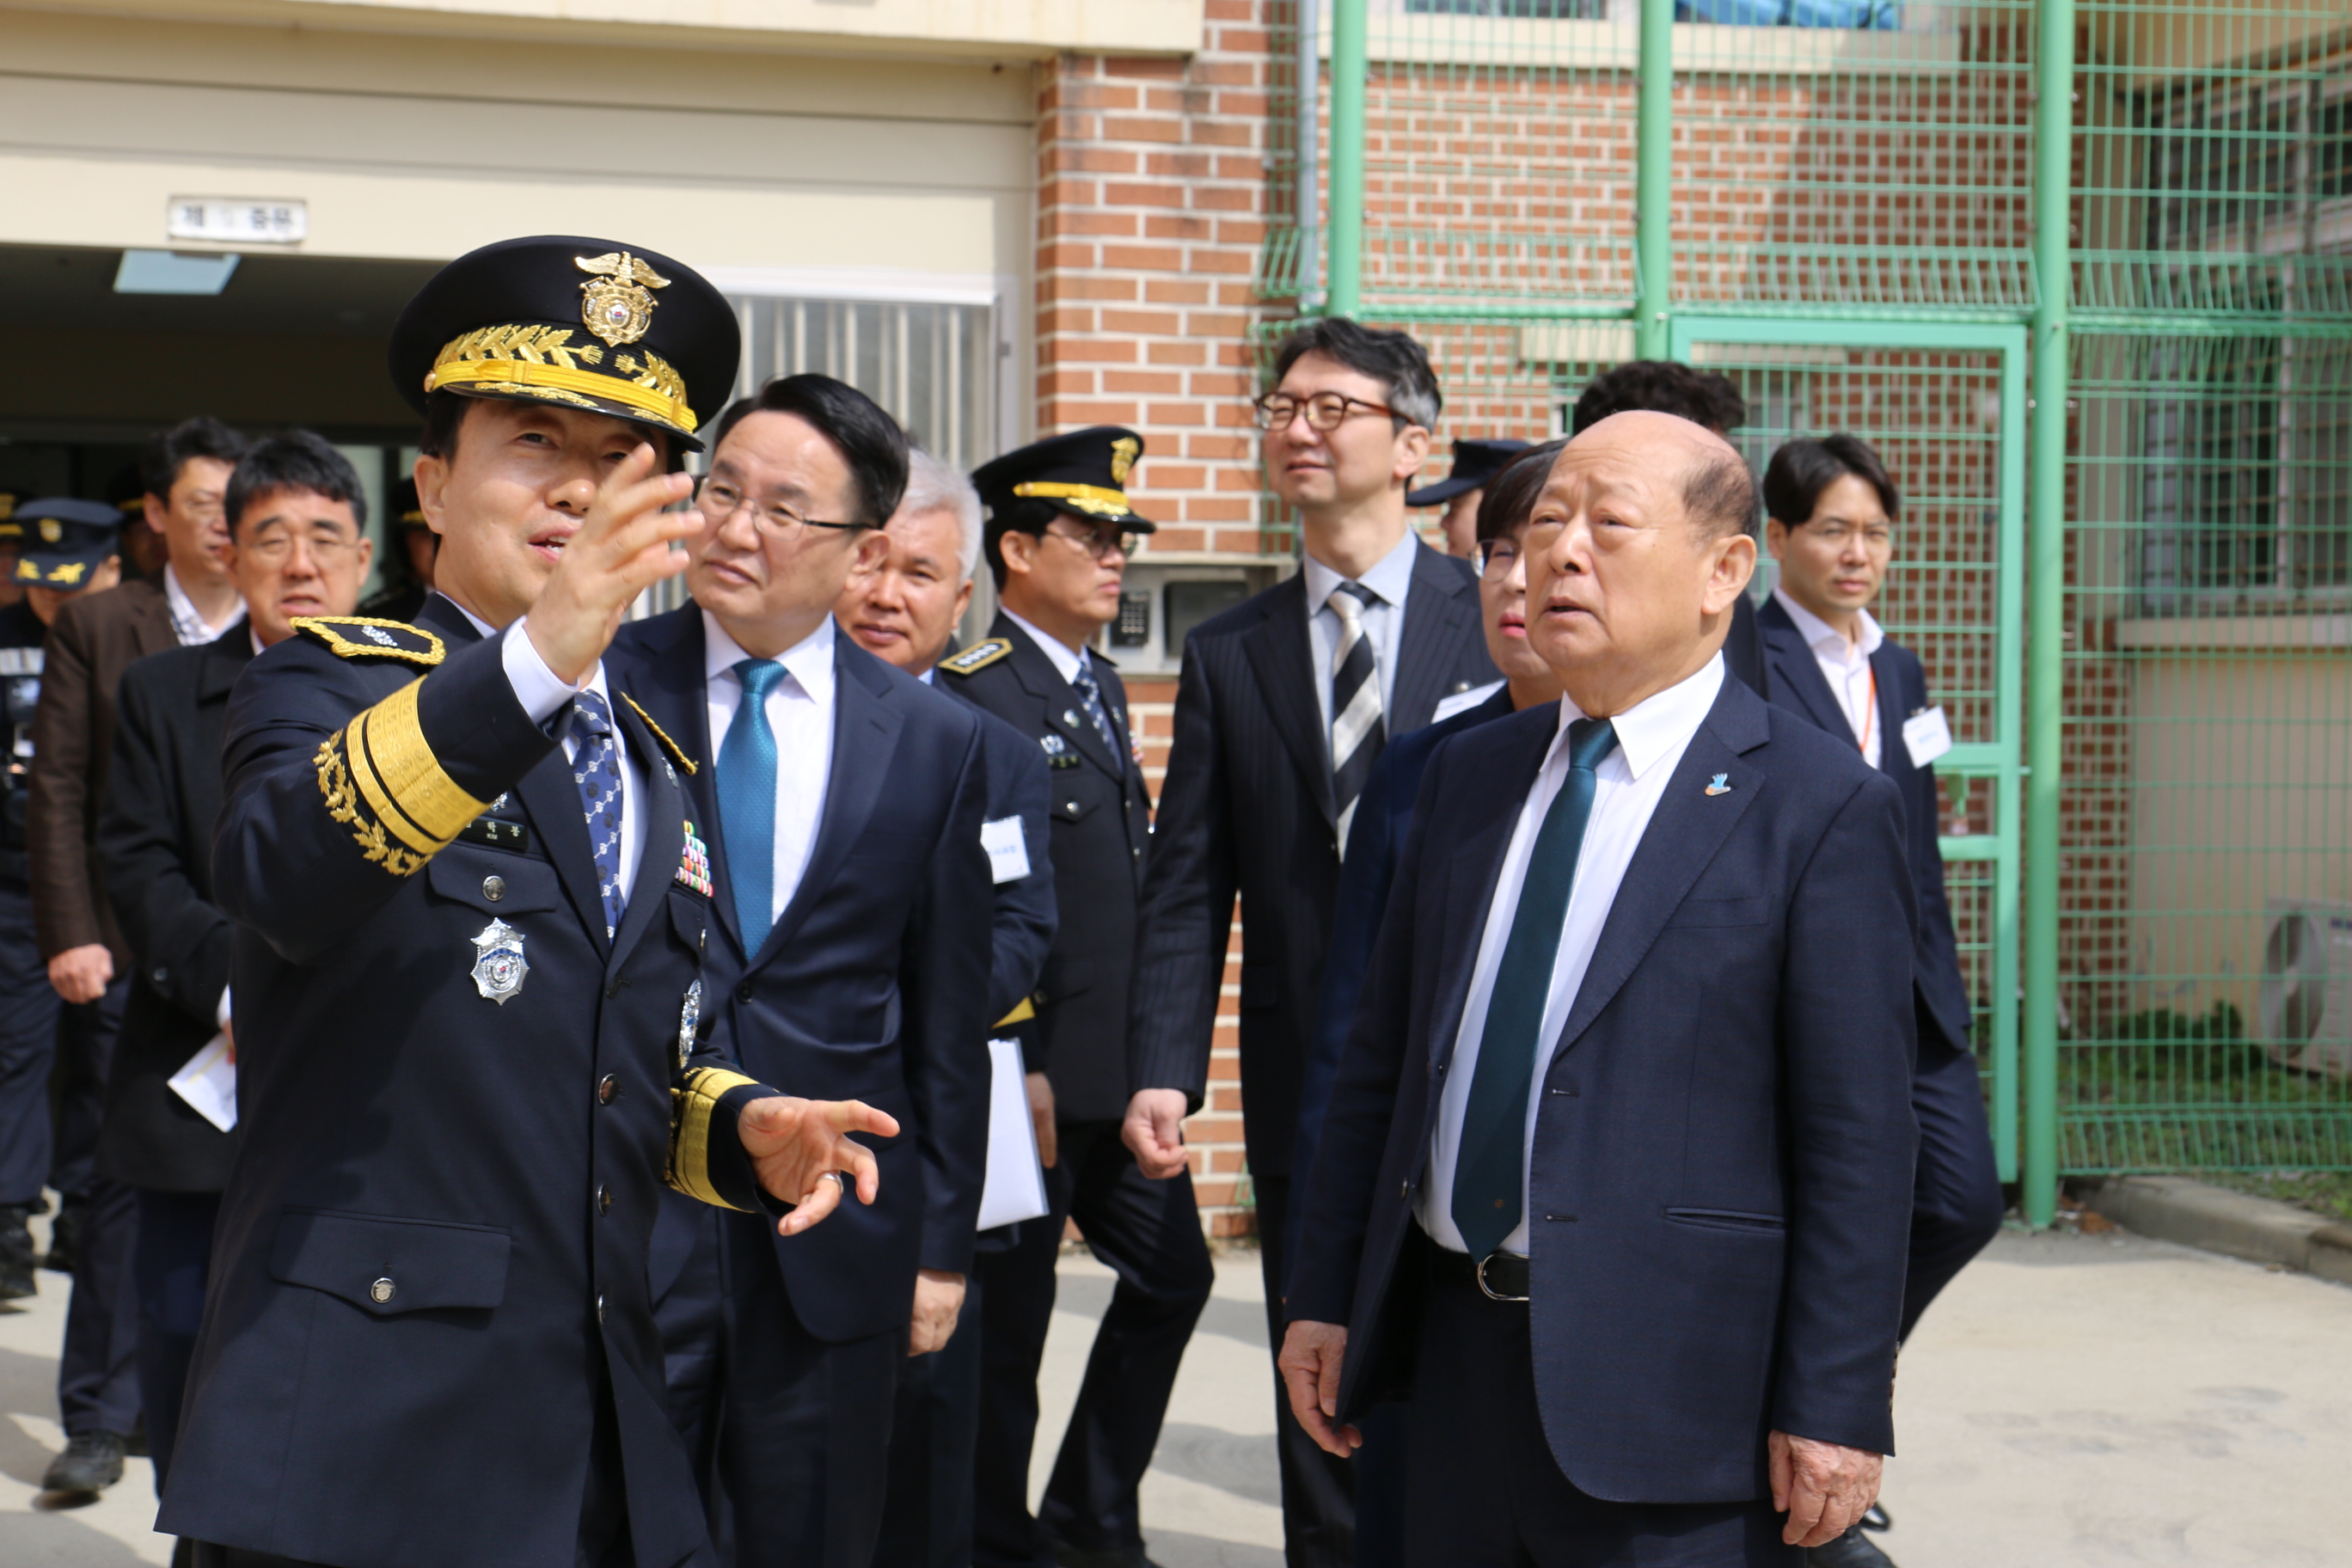 국가인권위원회(이하 ‘인권위’) 송두환 위원장은 3월 27일 의정부교도소를 방문하여 수용 환경 실태 파악 및 교정 관계자와의 간담회를 가졌습니다.